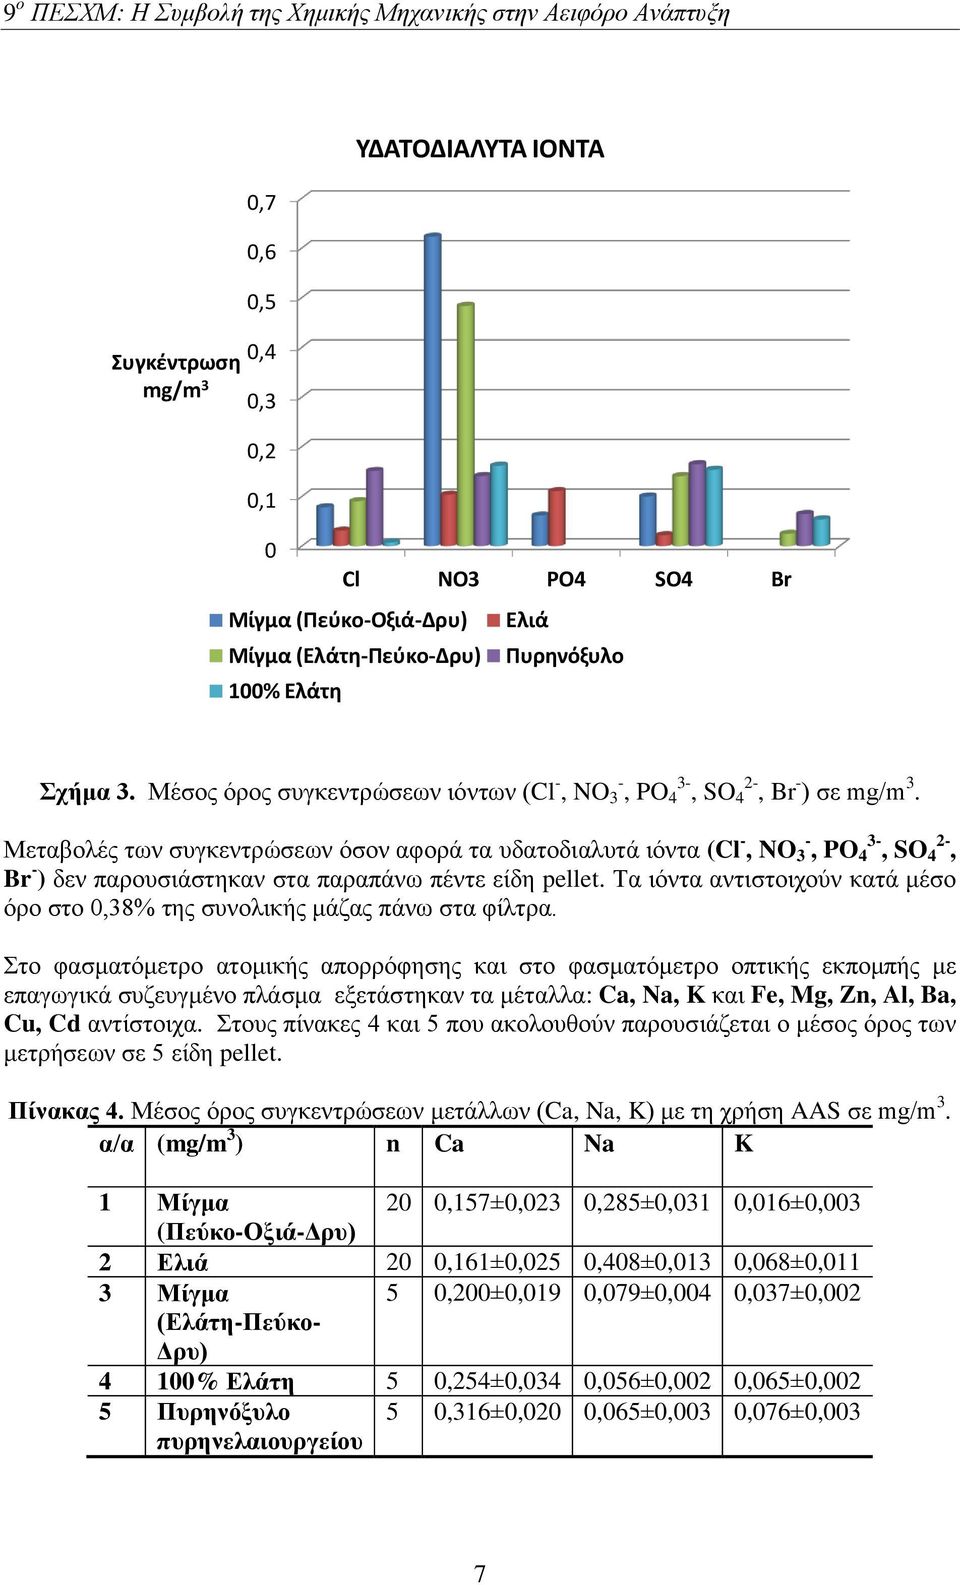 Μεταβολές των συγκεντρώσεων όσον αφορά τα υδατοδιαλυτά ιόντα (Cl -, NO 3 -, PO 4 3-, SO 4 2-, Br - ) δεν παρουσιάστηκαν στα παραπάνω πέντε είδη pellet.